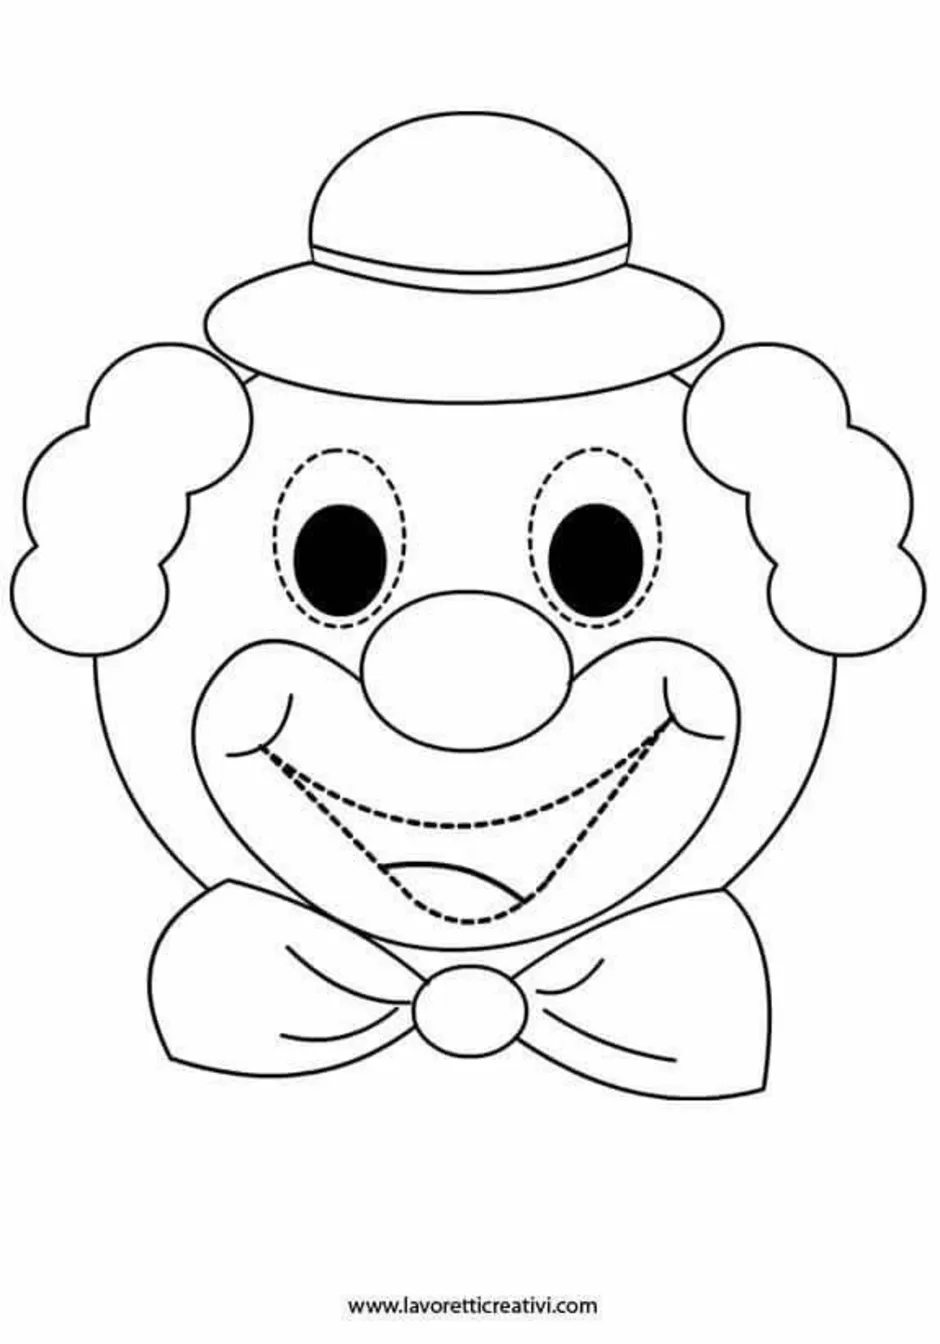 Маска клоуна для детей распечатать. Клоун раскраска. Лицо клоуна раскраска. Клоун раскраска для детей. Клоун трафарет.